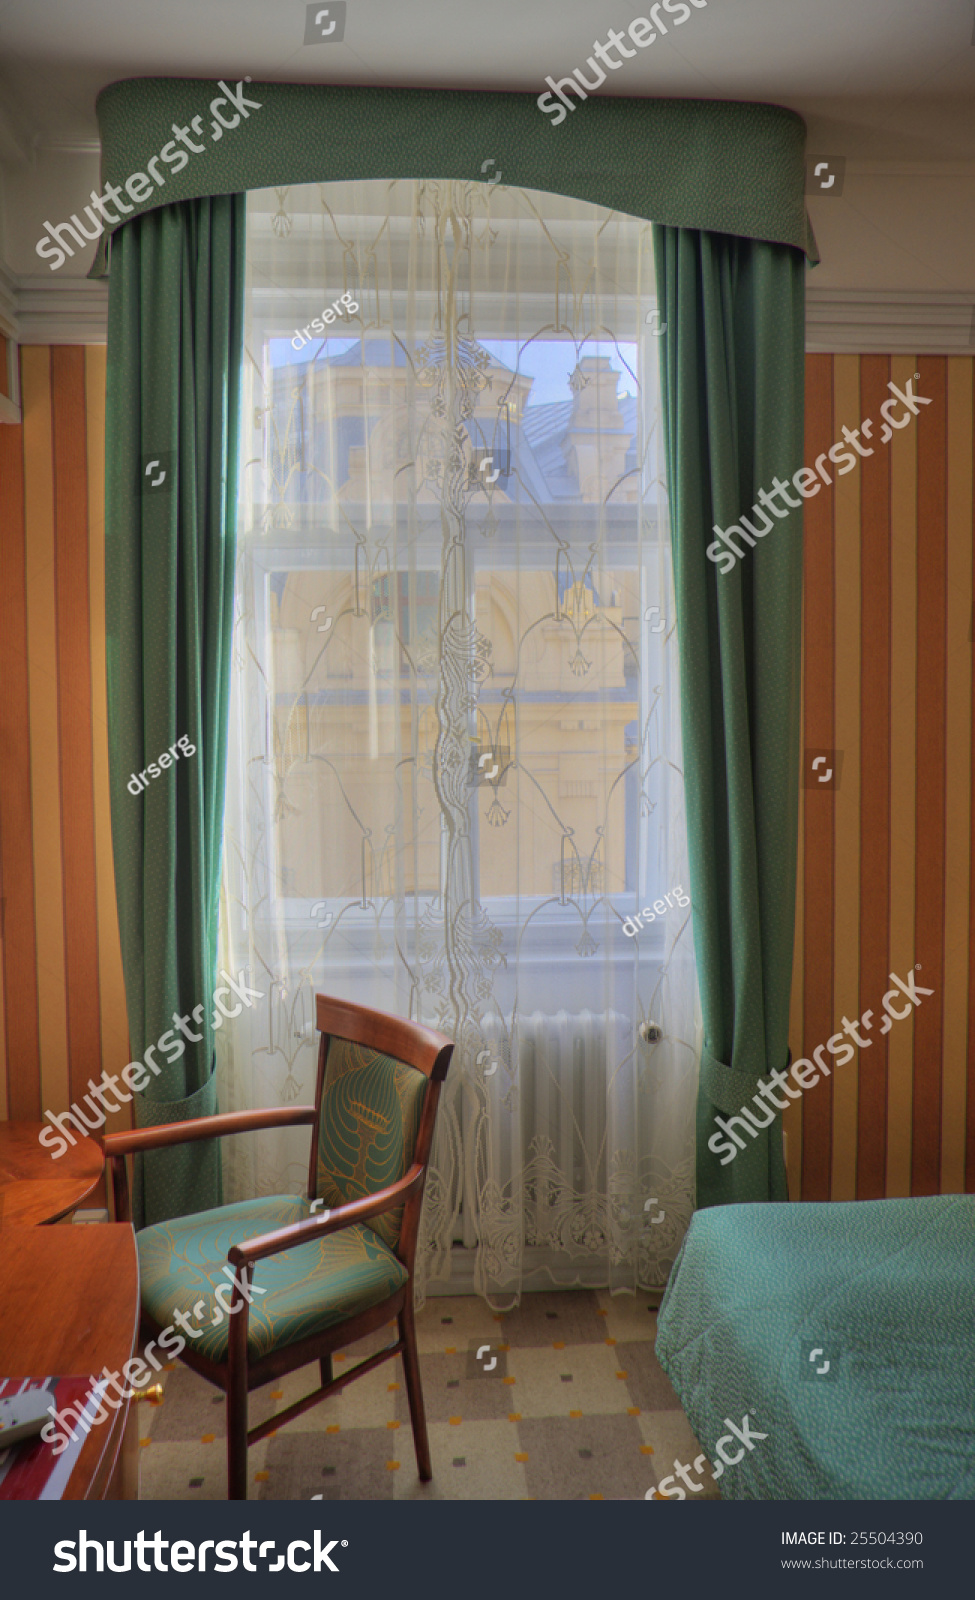 window furnishings